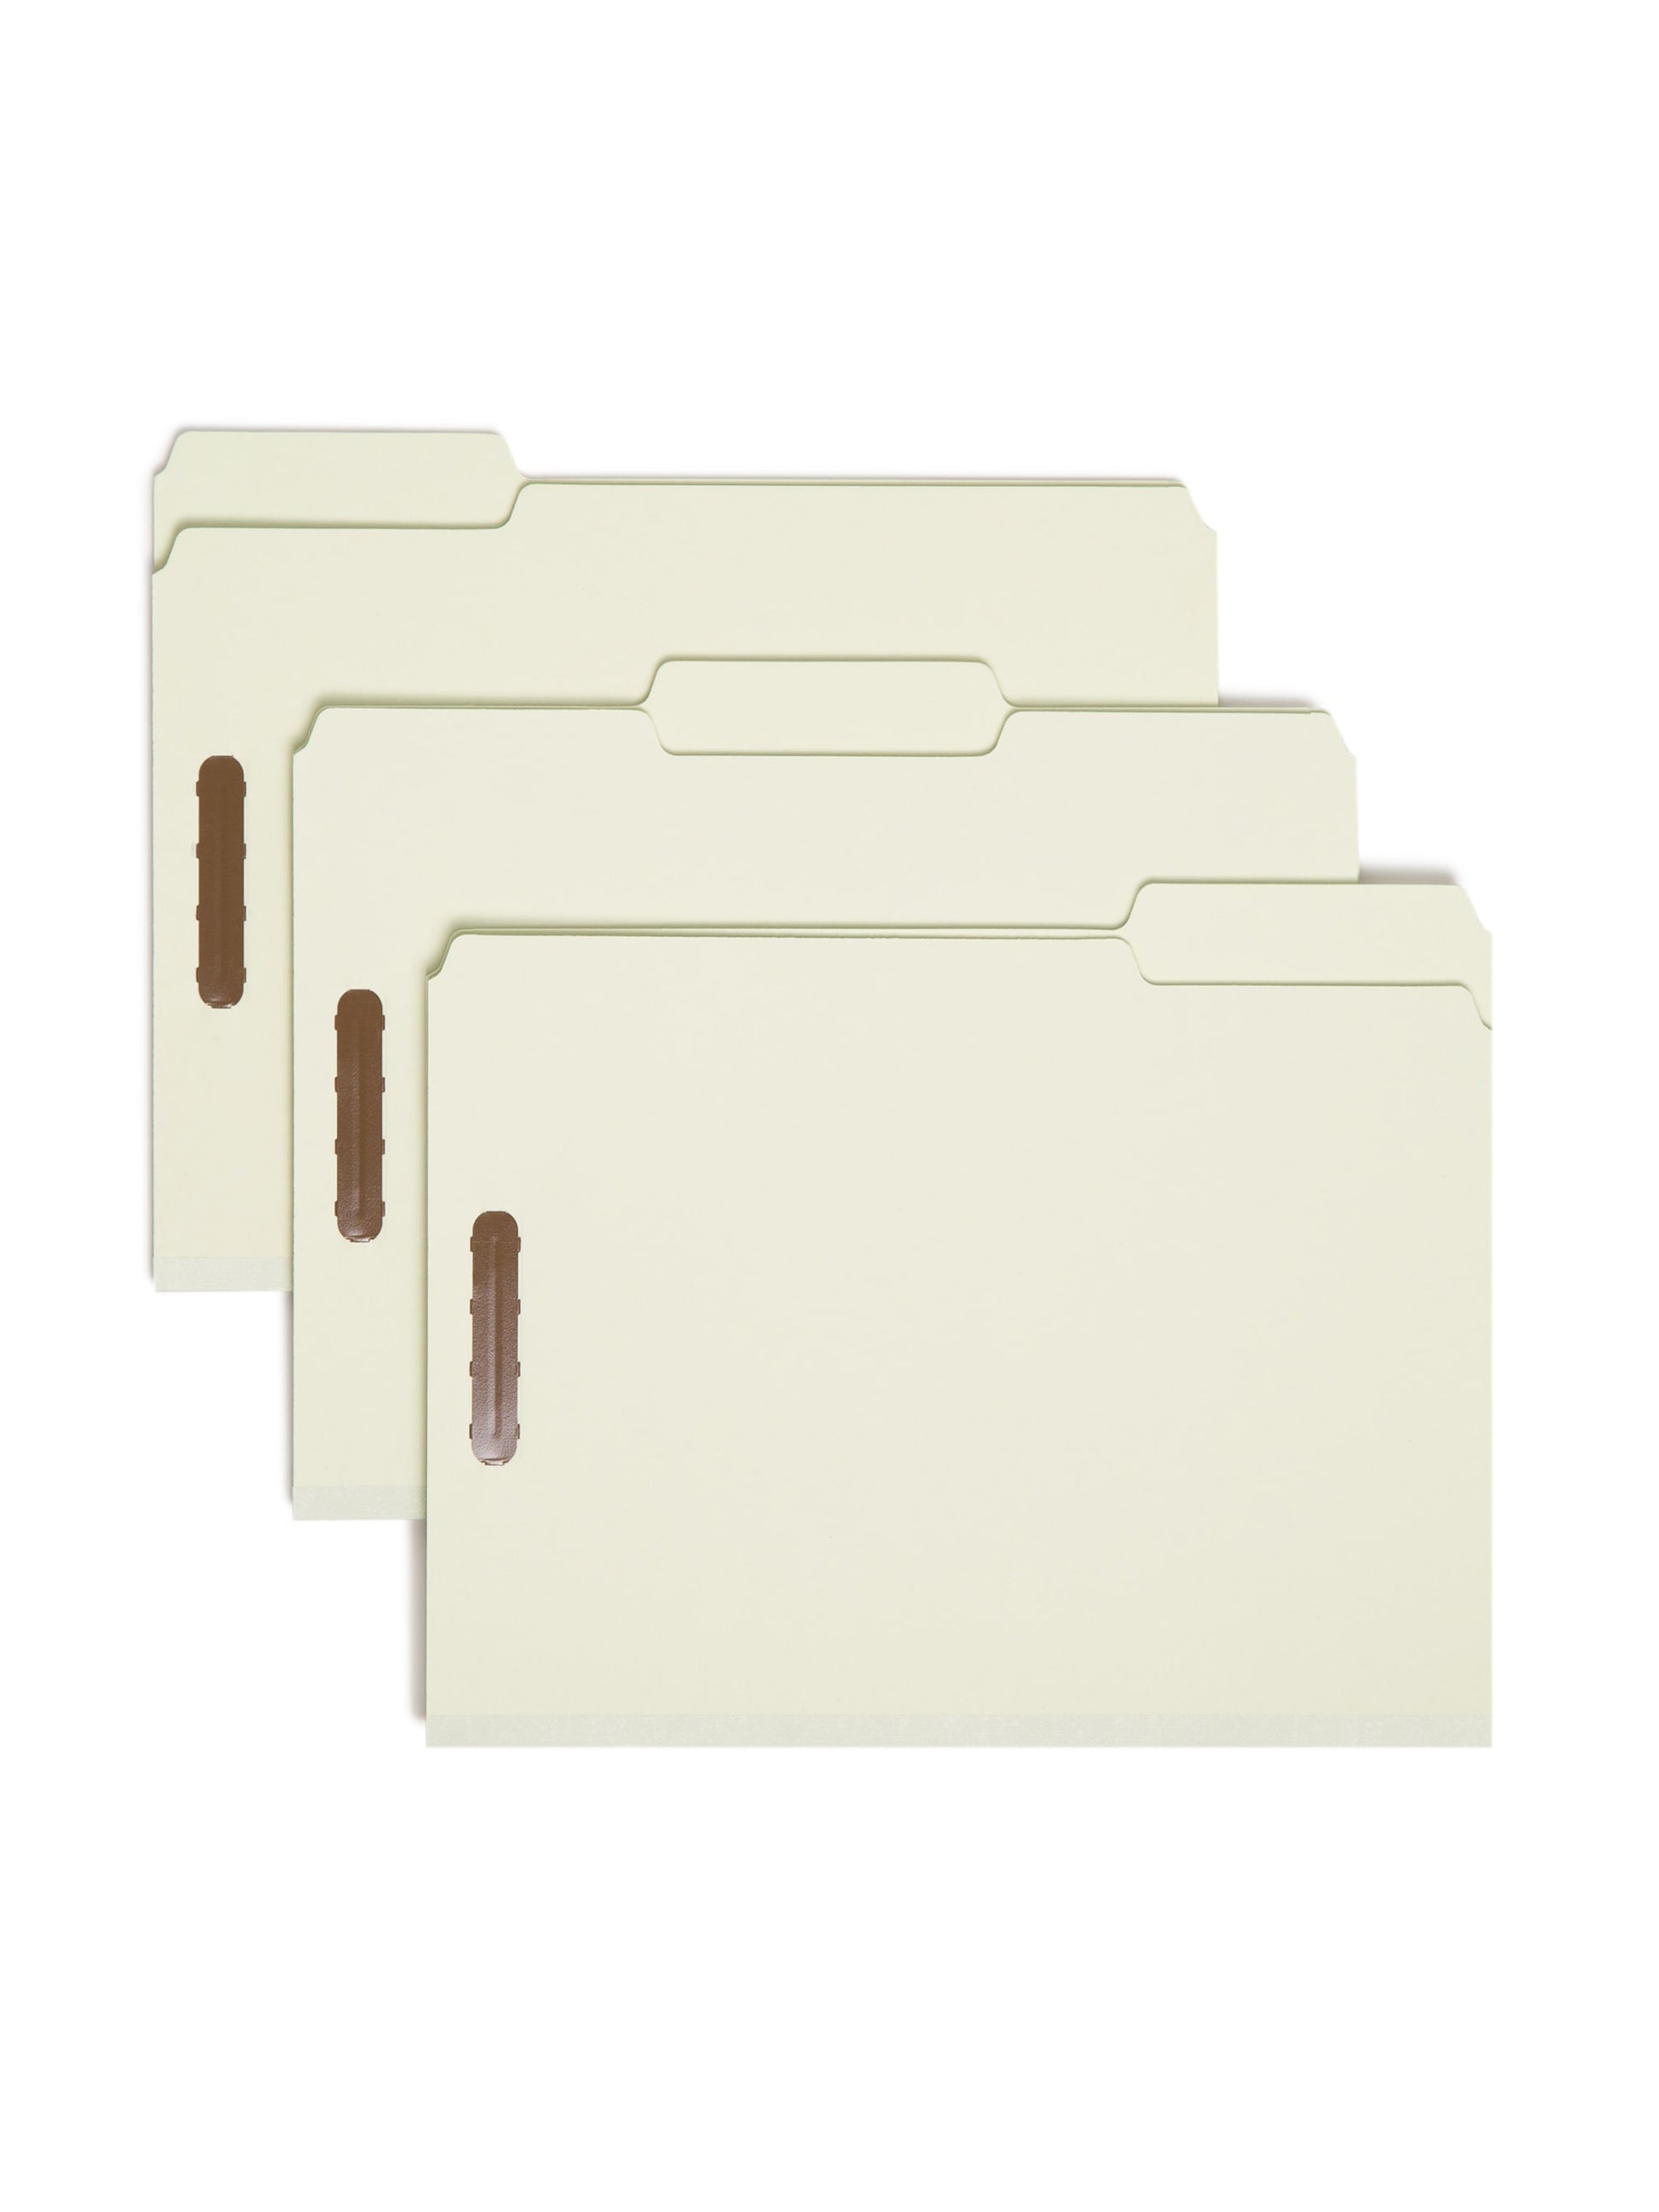 Pressboard Fastener File Folders, 3 inch Expansion, Gray/Green Color, Letter Size, Set of 25, 086486150057